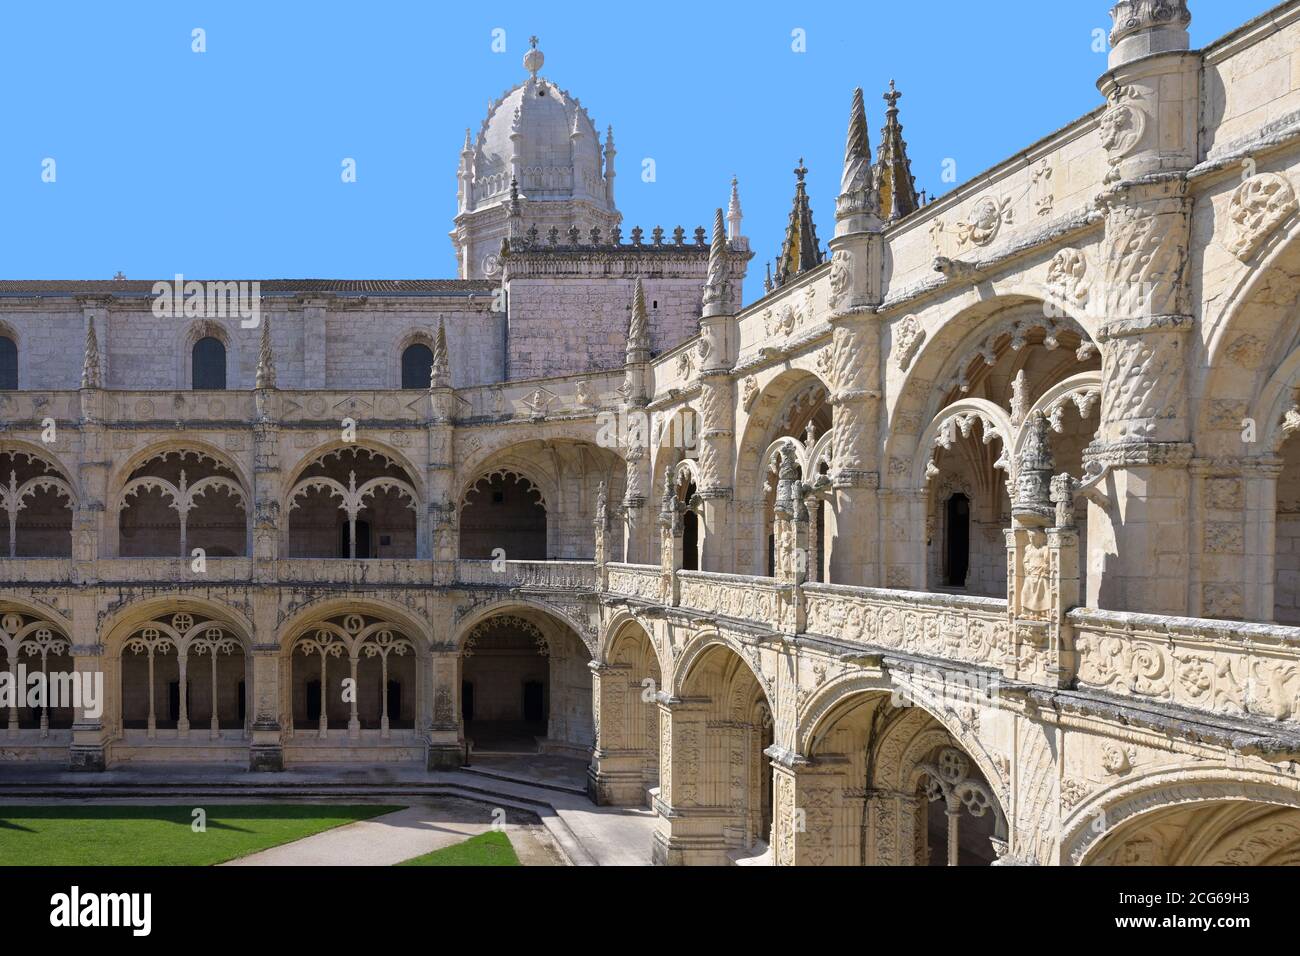 Innenhof im Kloster, Hieronymiten-Kloster, Mosteiro dos Jeronimos, Belem,  Lissabon, Portugal Stockfotografie - Alamy